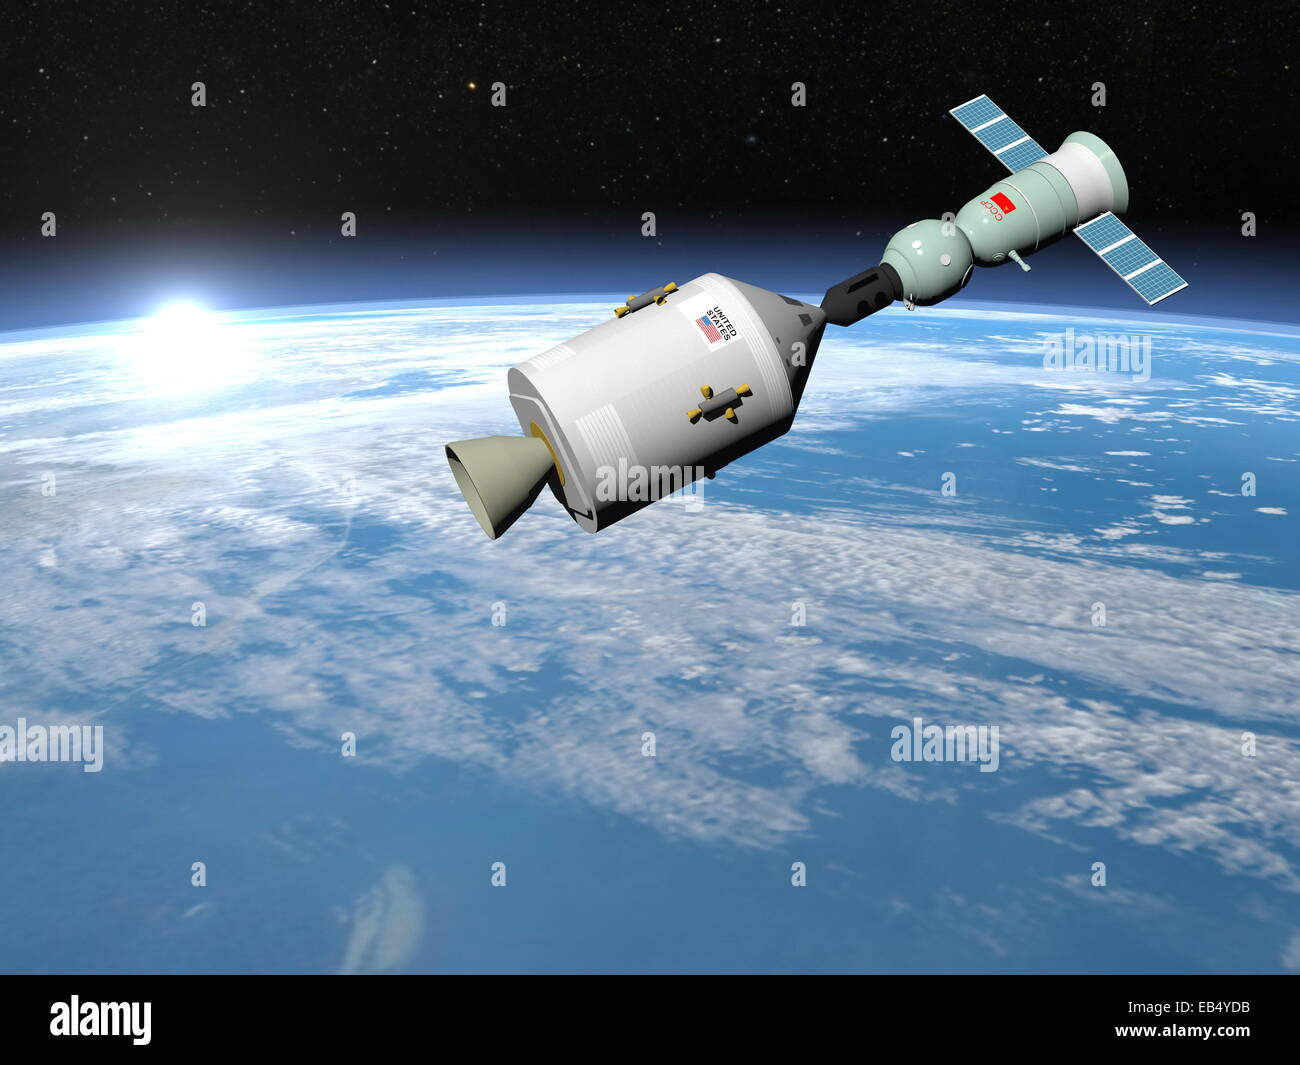 Projet expérimental d'essai Apollo-soyouz avec vol commun du vaisseau spatial soviétique Soyouz-19 et le vaisseau spatial américain Apollo, ele Banque D'Images